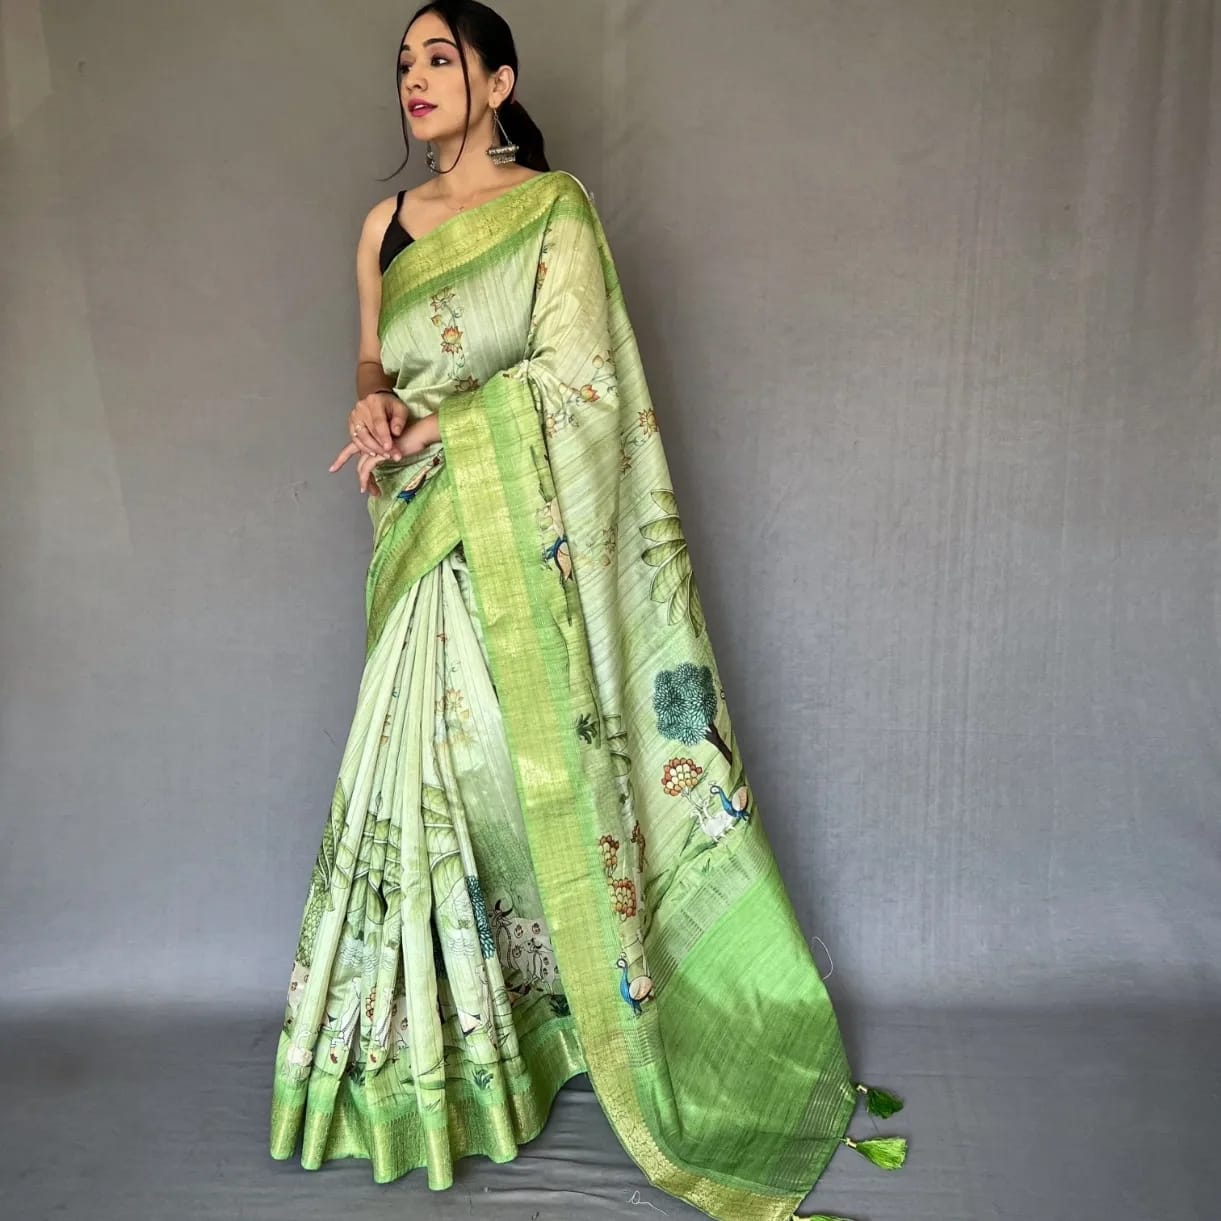 trendy green sari for rakhi